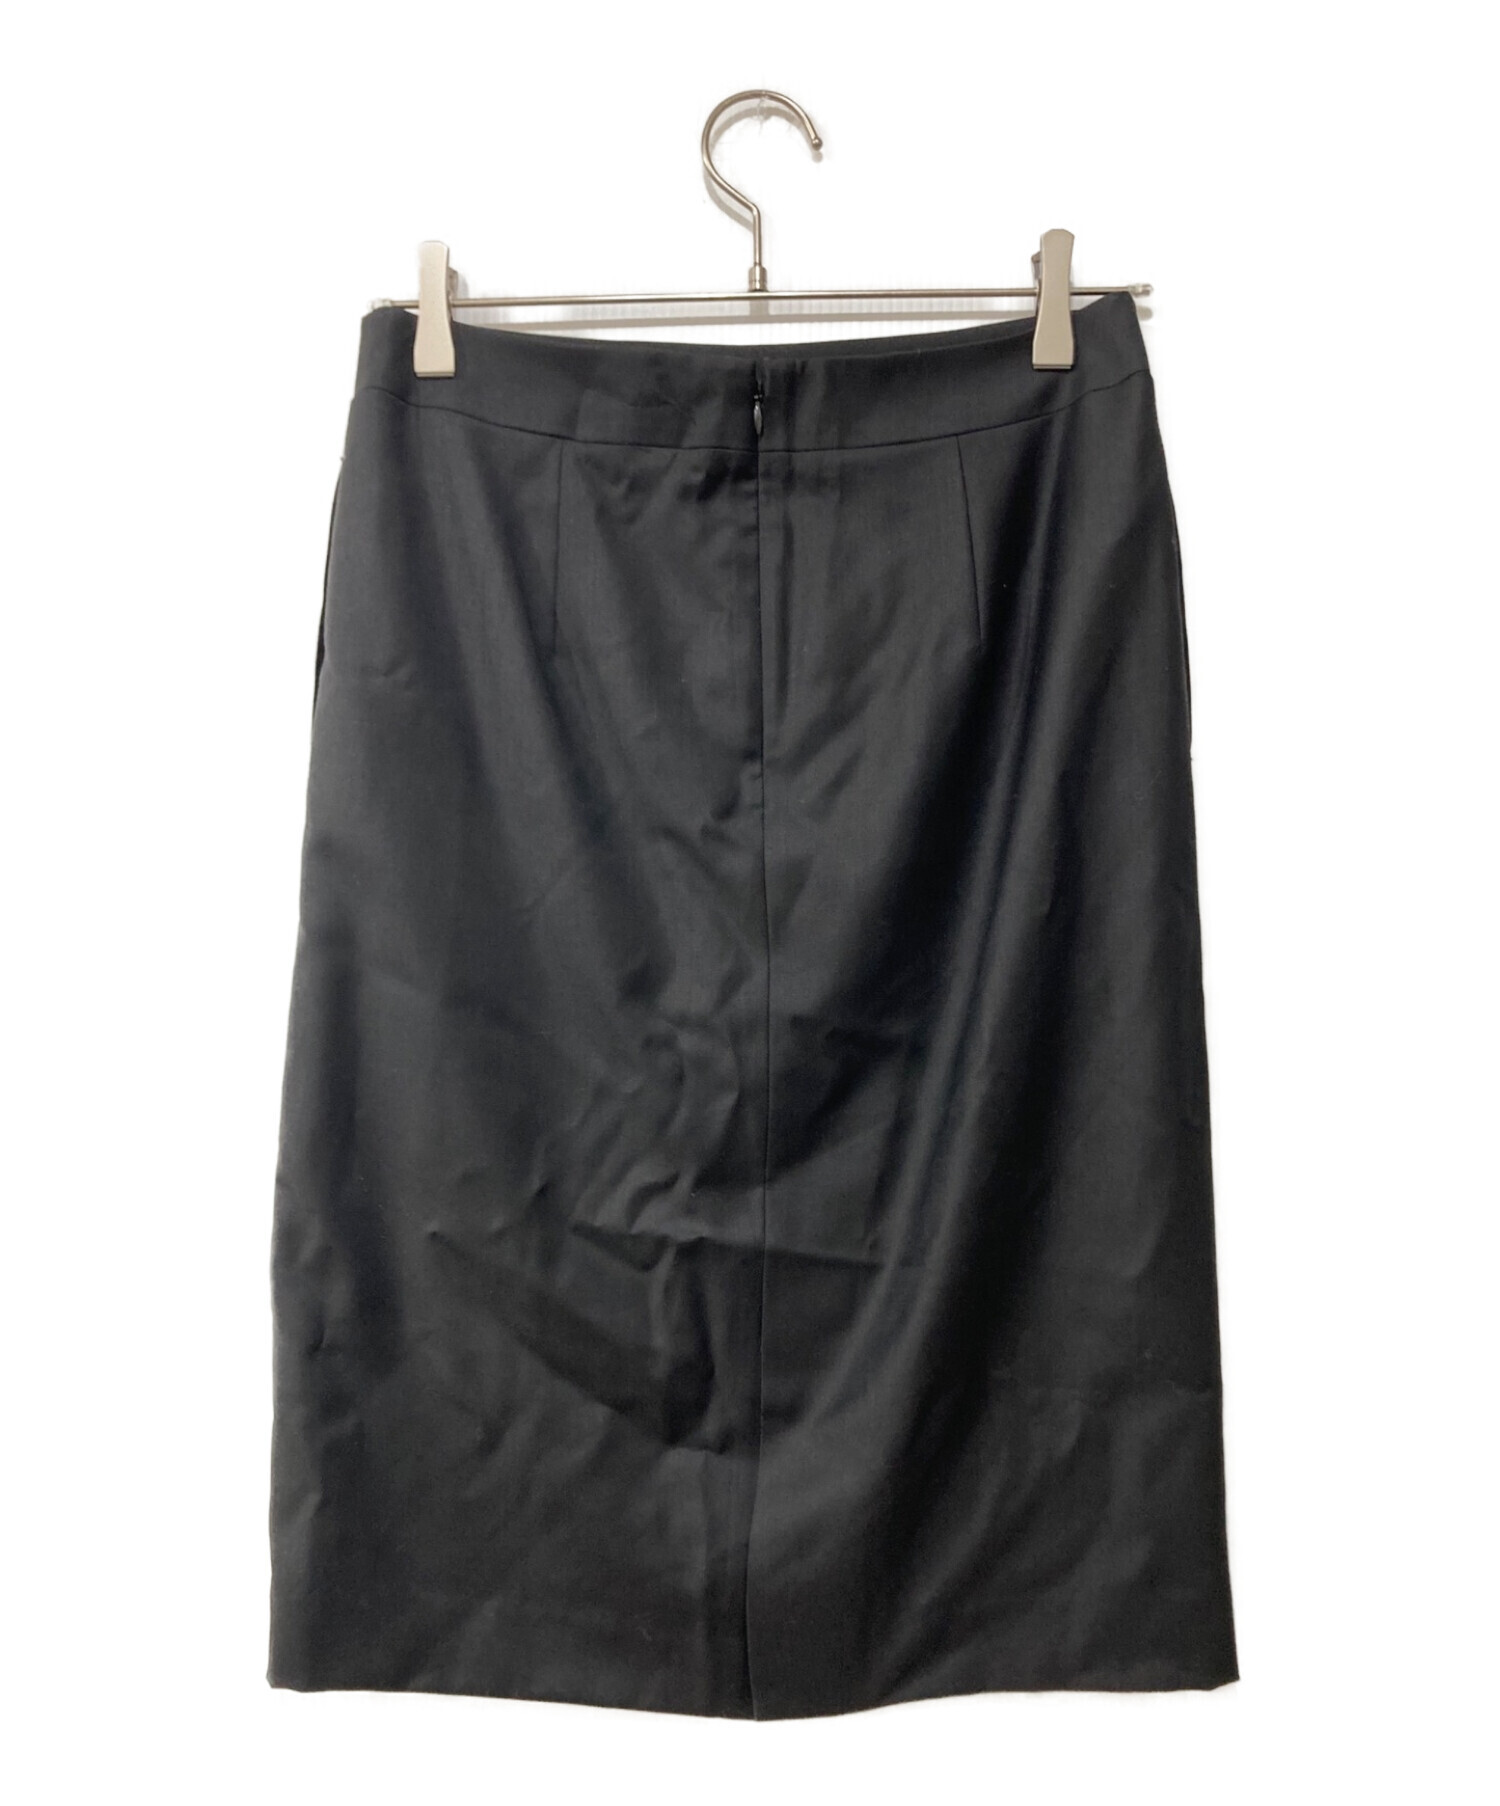 MACKINTOSH LONDON (マッキントッシュ ロンドン) ファインウールスカート ブラック サイズ:38 未使用品